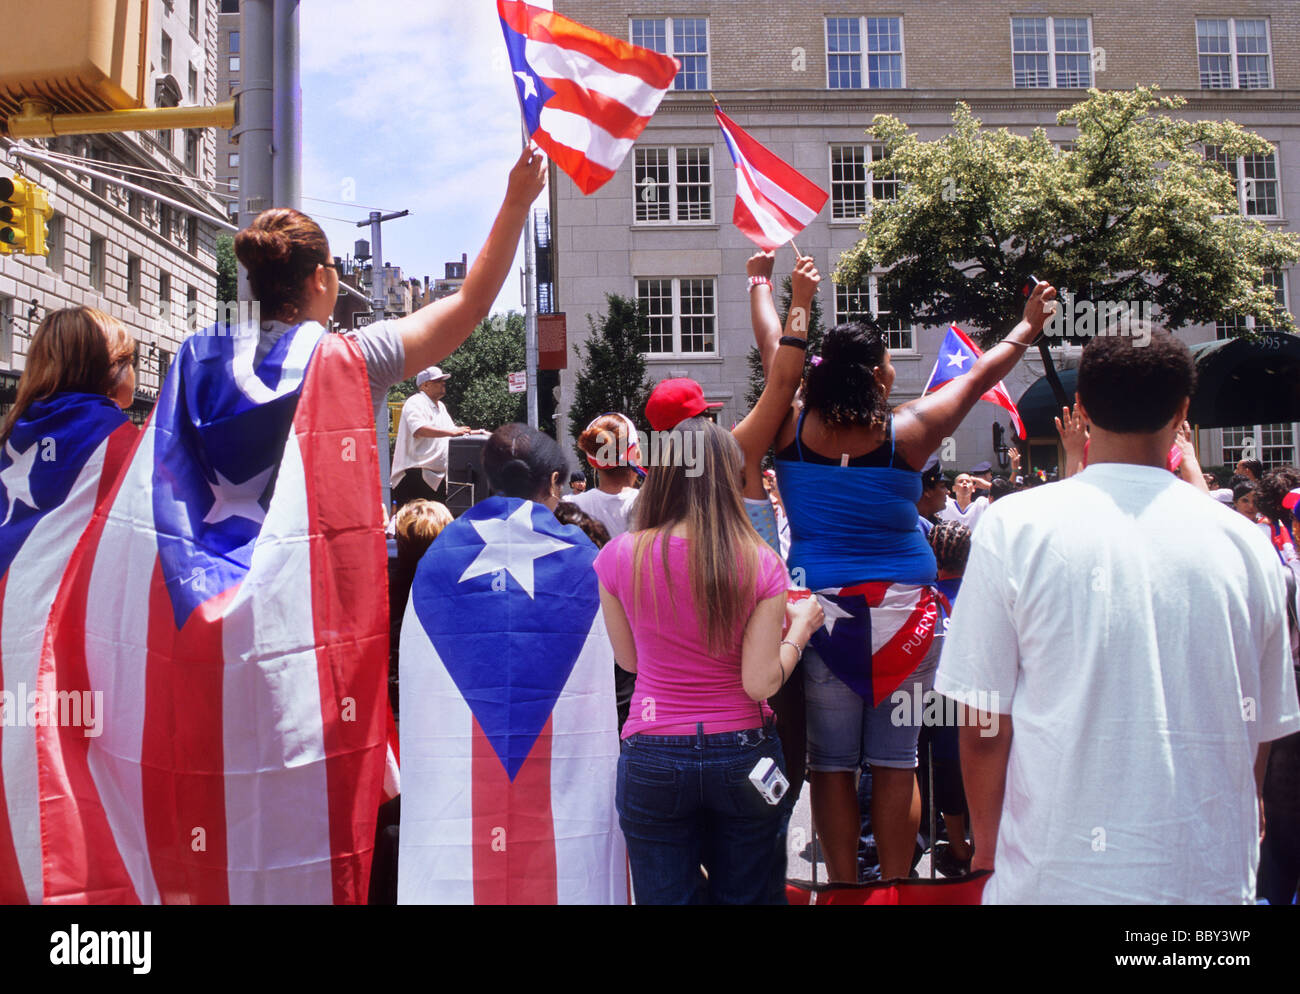 Puerto-ricanische Tagesparade in New York City. Auf der Fifth Avenue USA beobachten die Zuschauer Paradefeiern, die jubeln und die Flaggen schwenken. Puerto Rico Festival. NEW YORK CITY Stockfoto